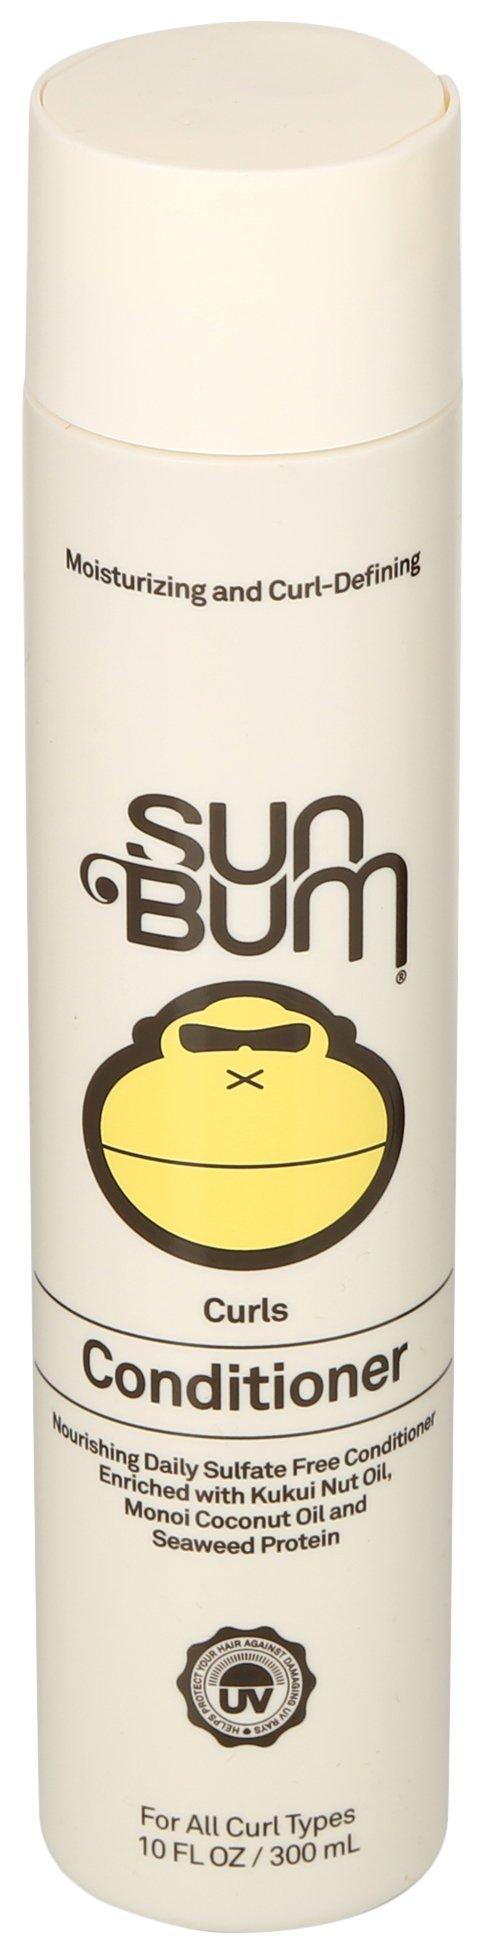 Sun Bum 10 Fl. Oz. Curls Conditioner